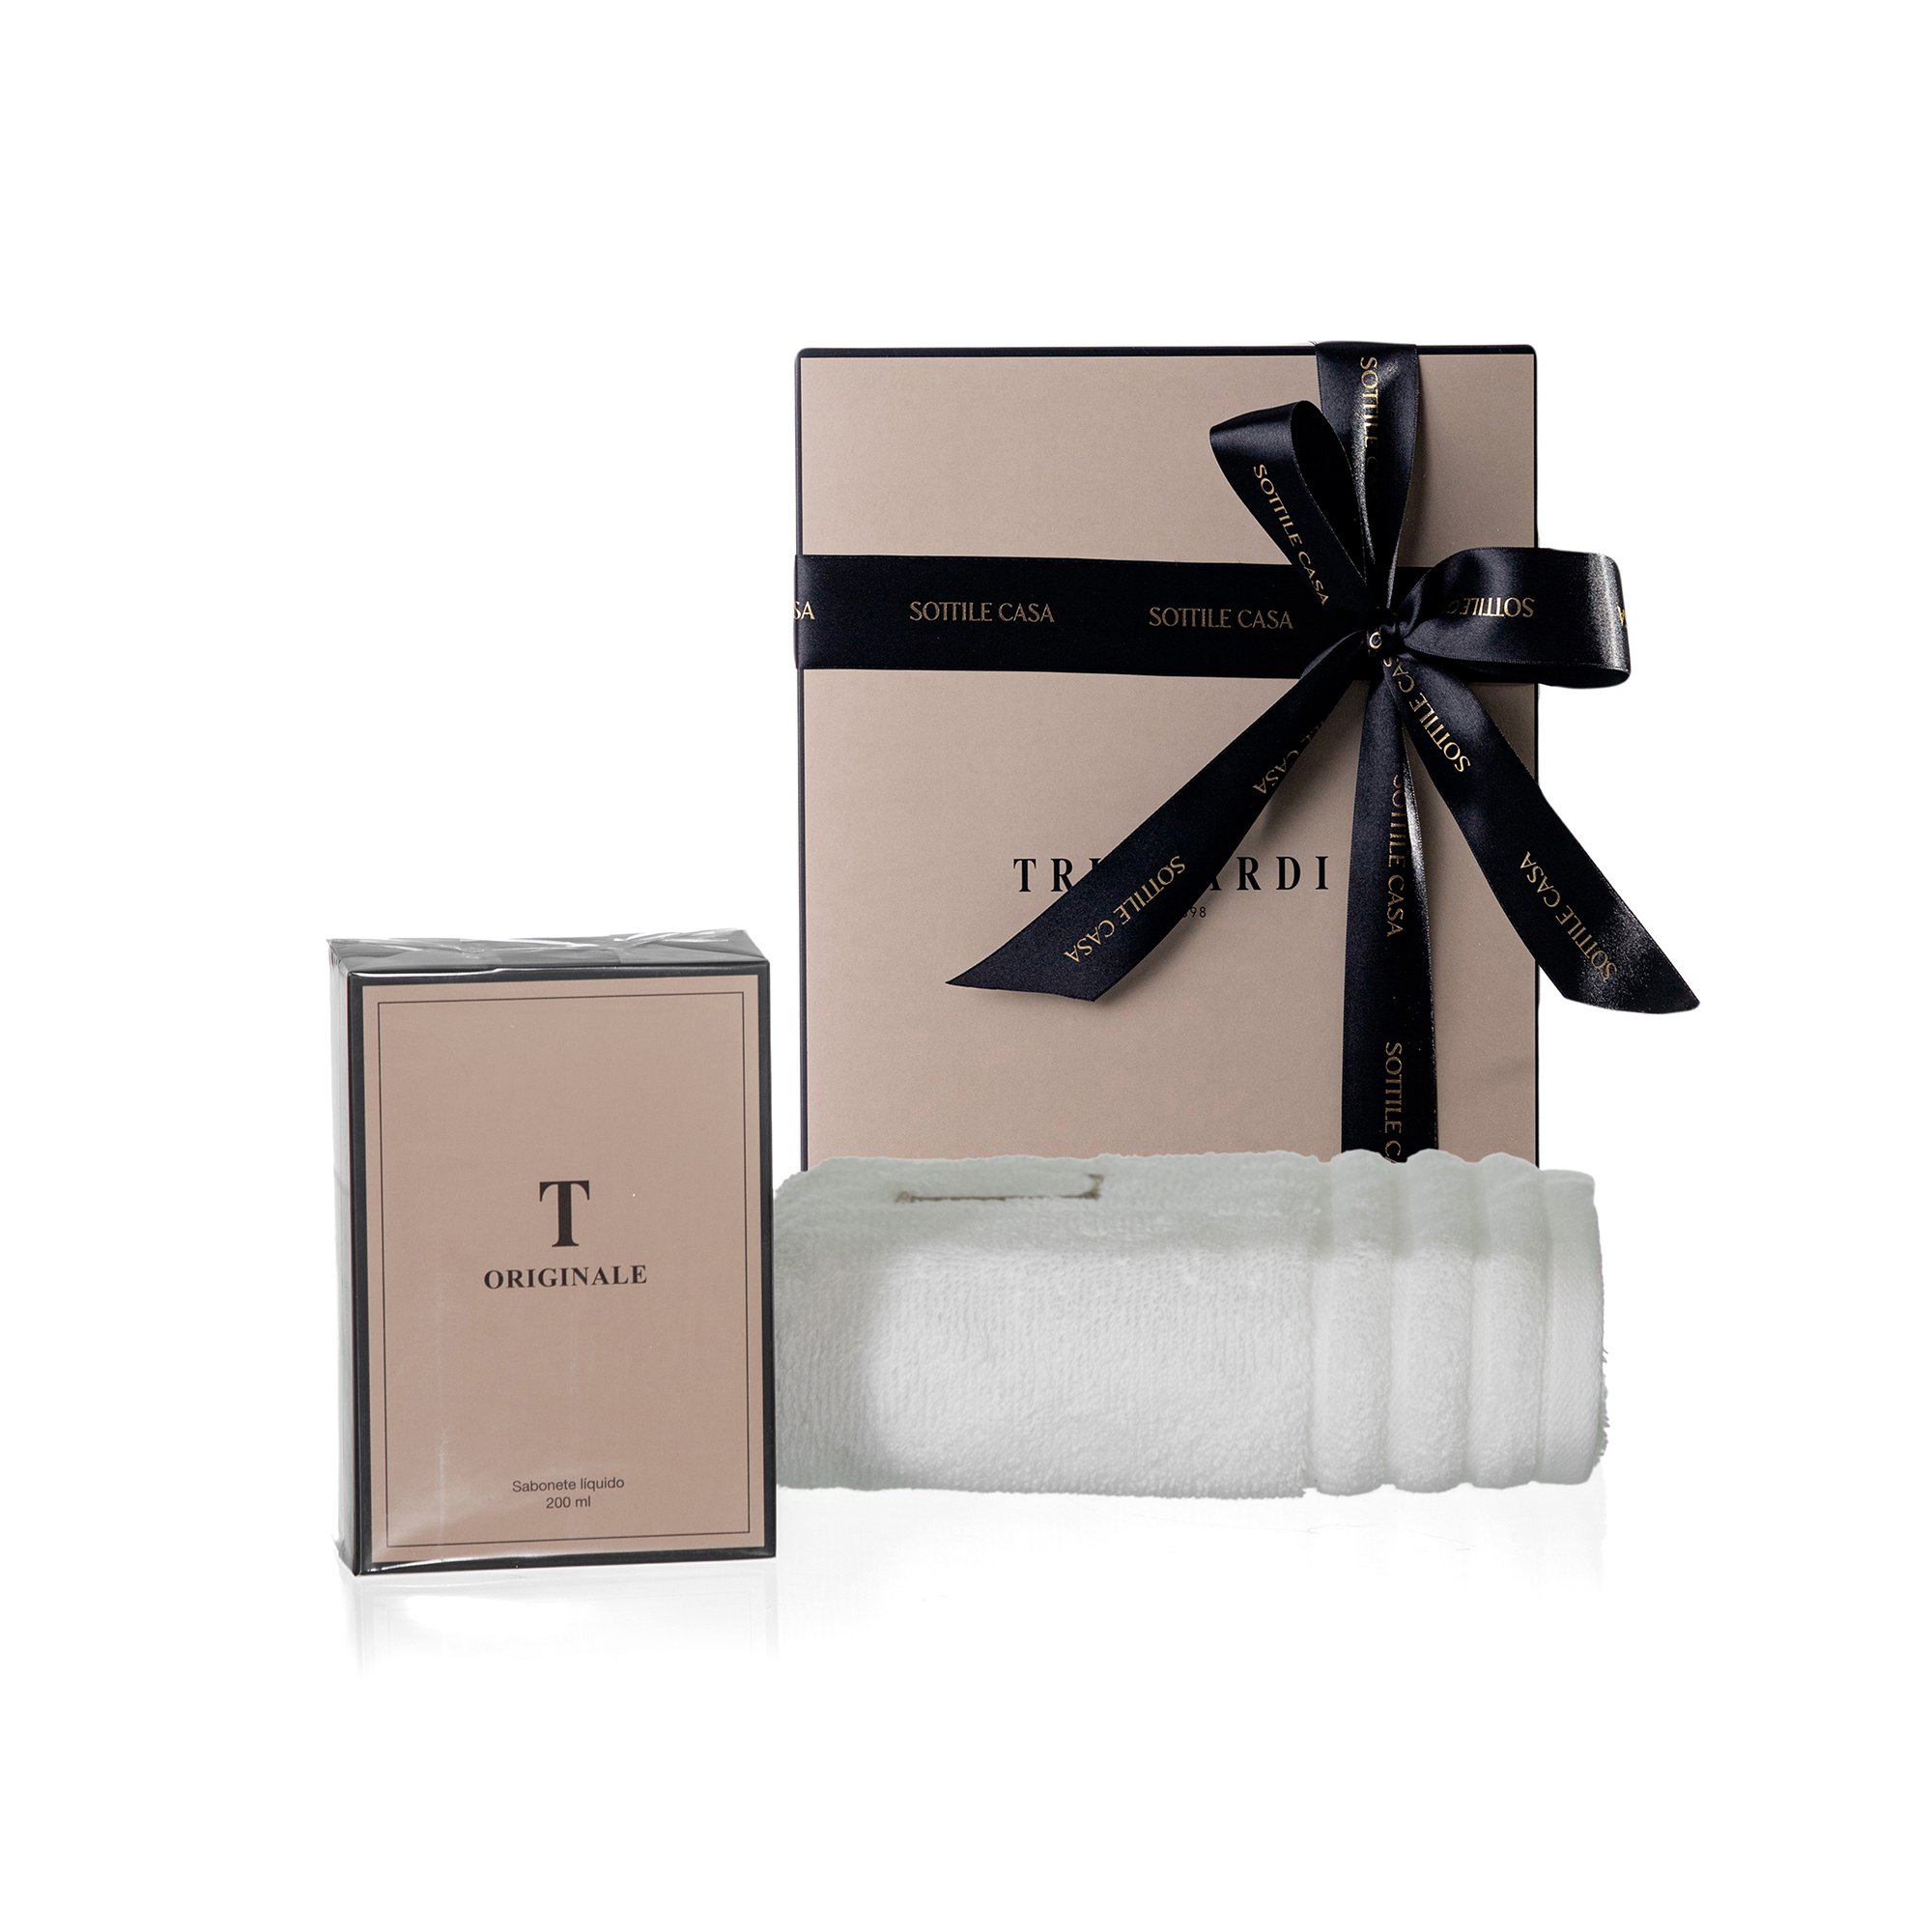 kit toalha de rosto 100 algodao trussardi imperiale branco com sabonete liquido trussardi 200ml originale com caixa de presente 2